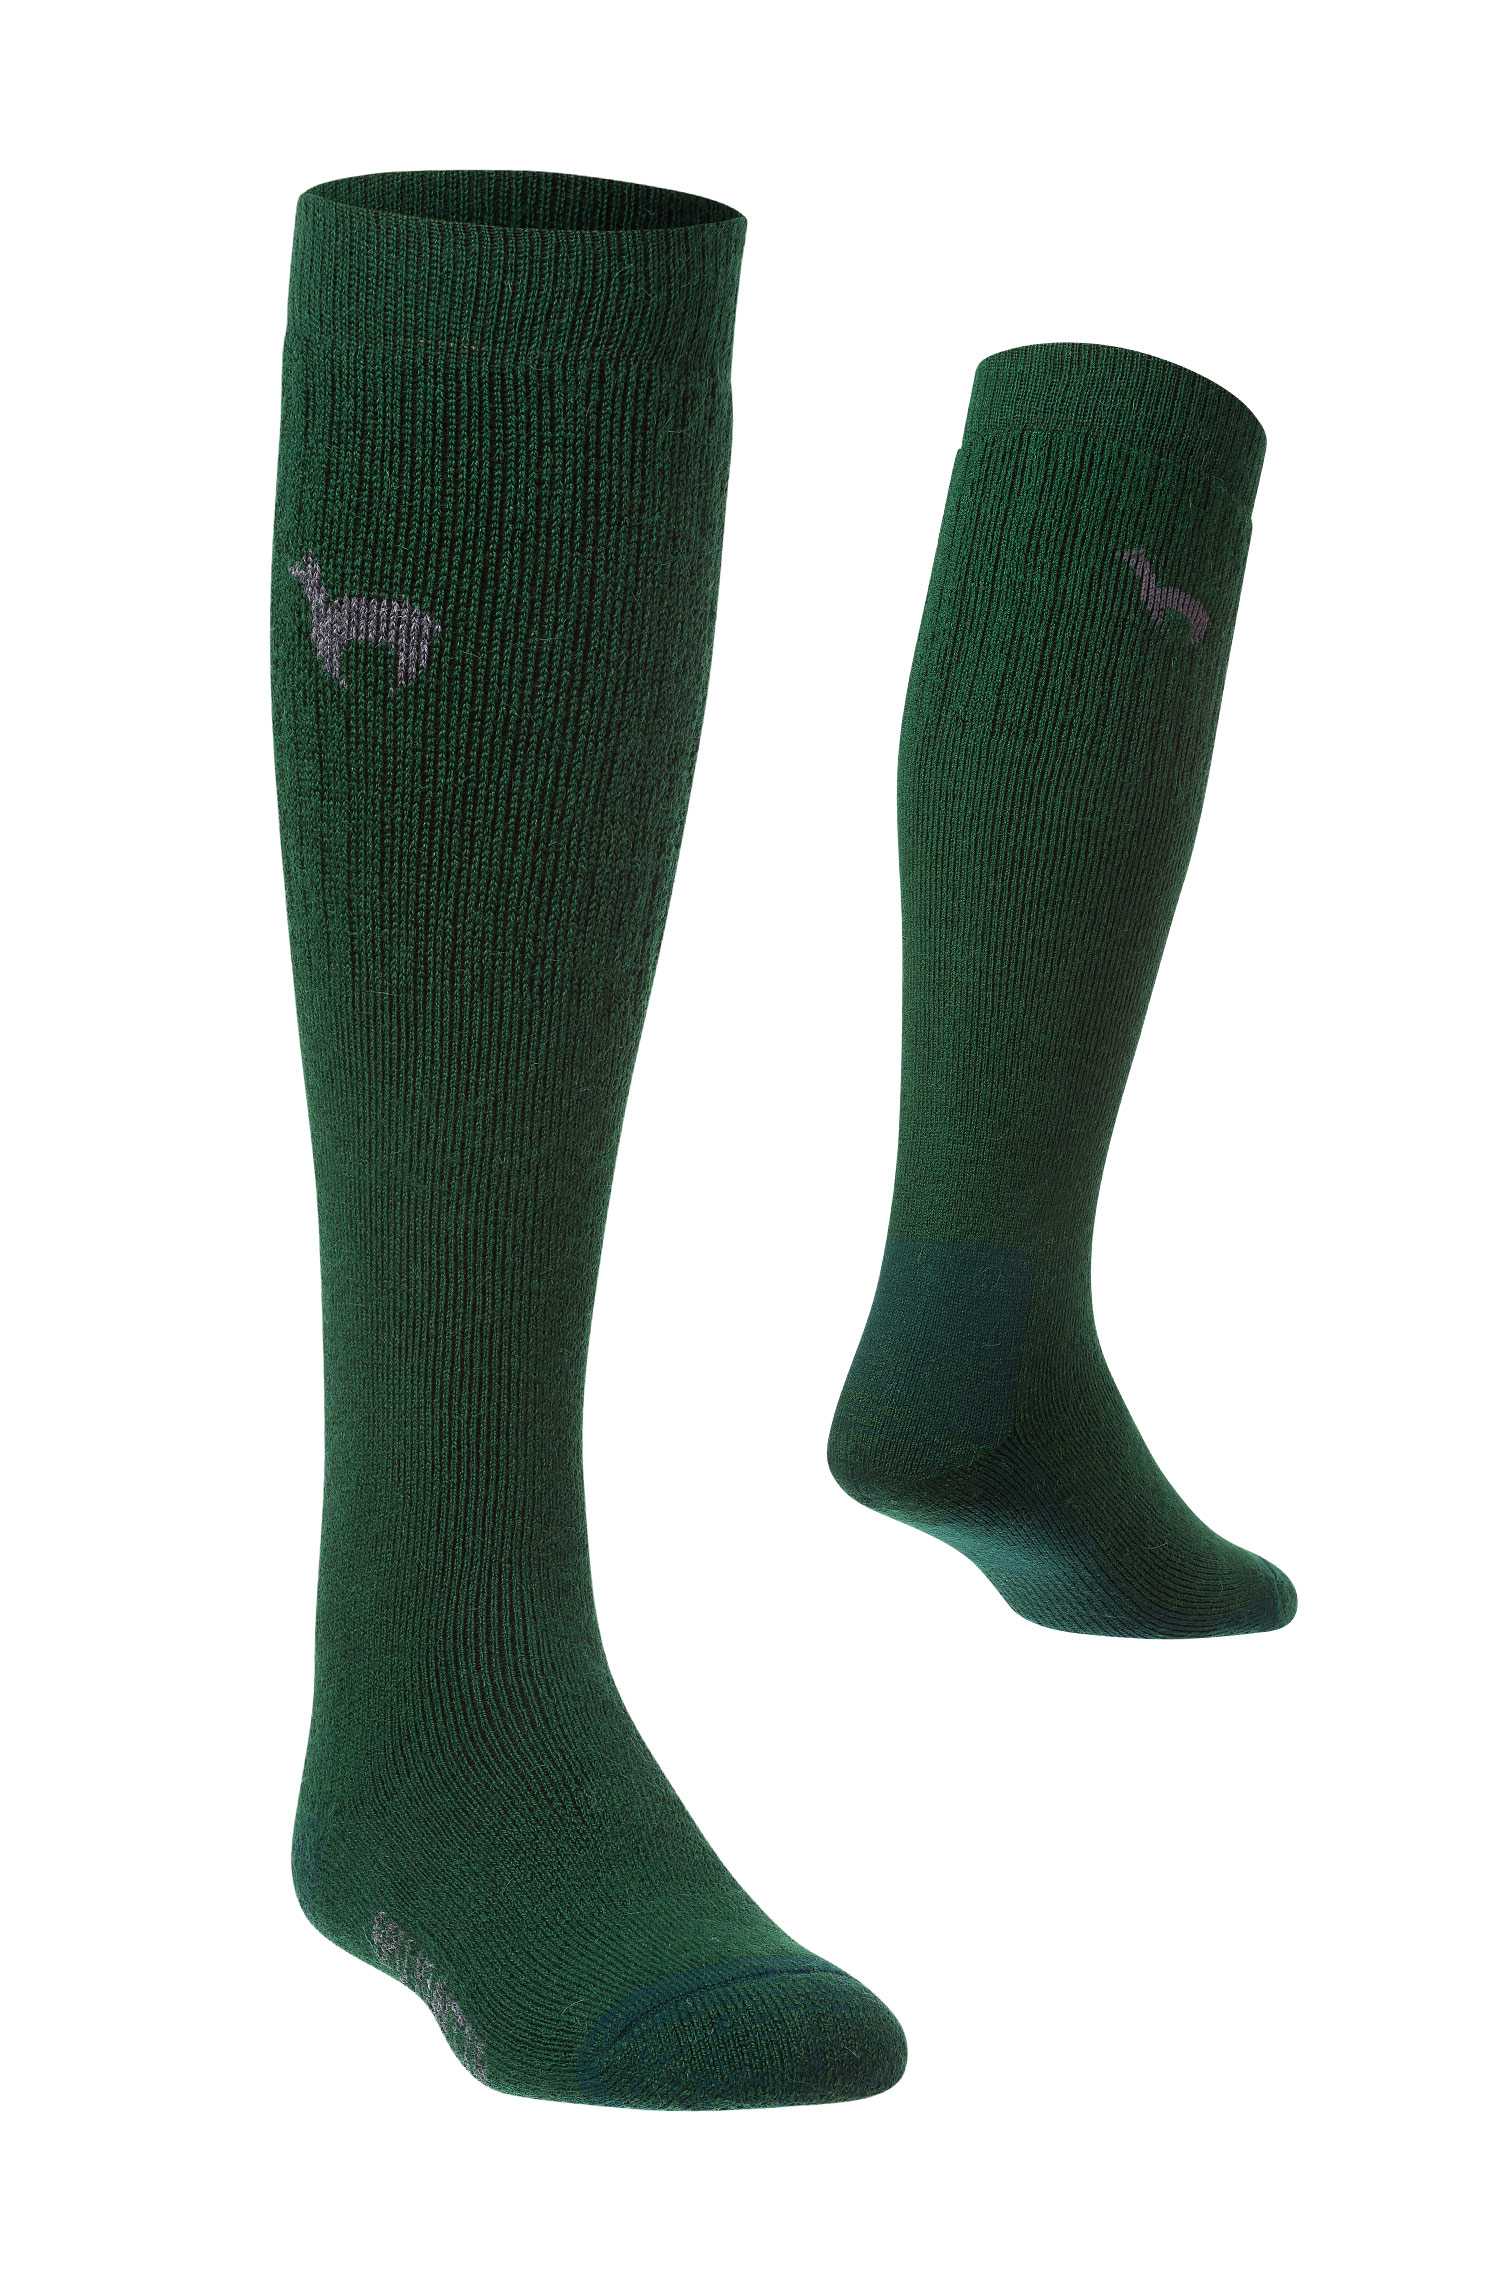 Alpaka JAGD-Socken aus 52% Alpaka & 18% Wolle